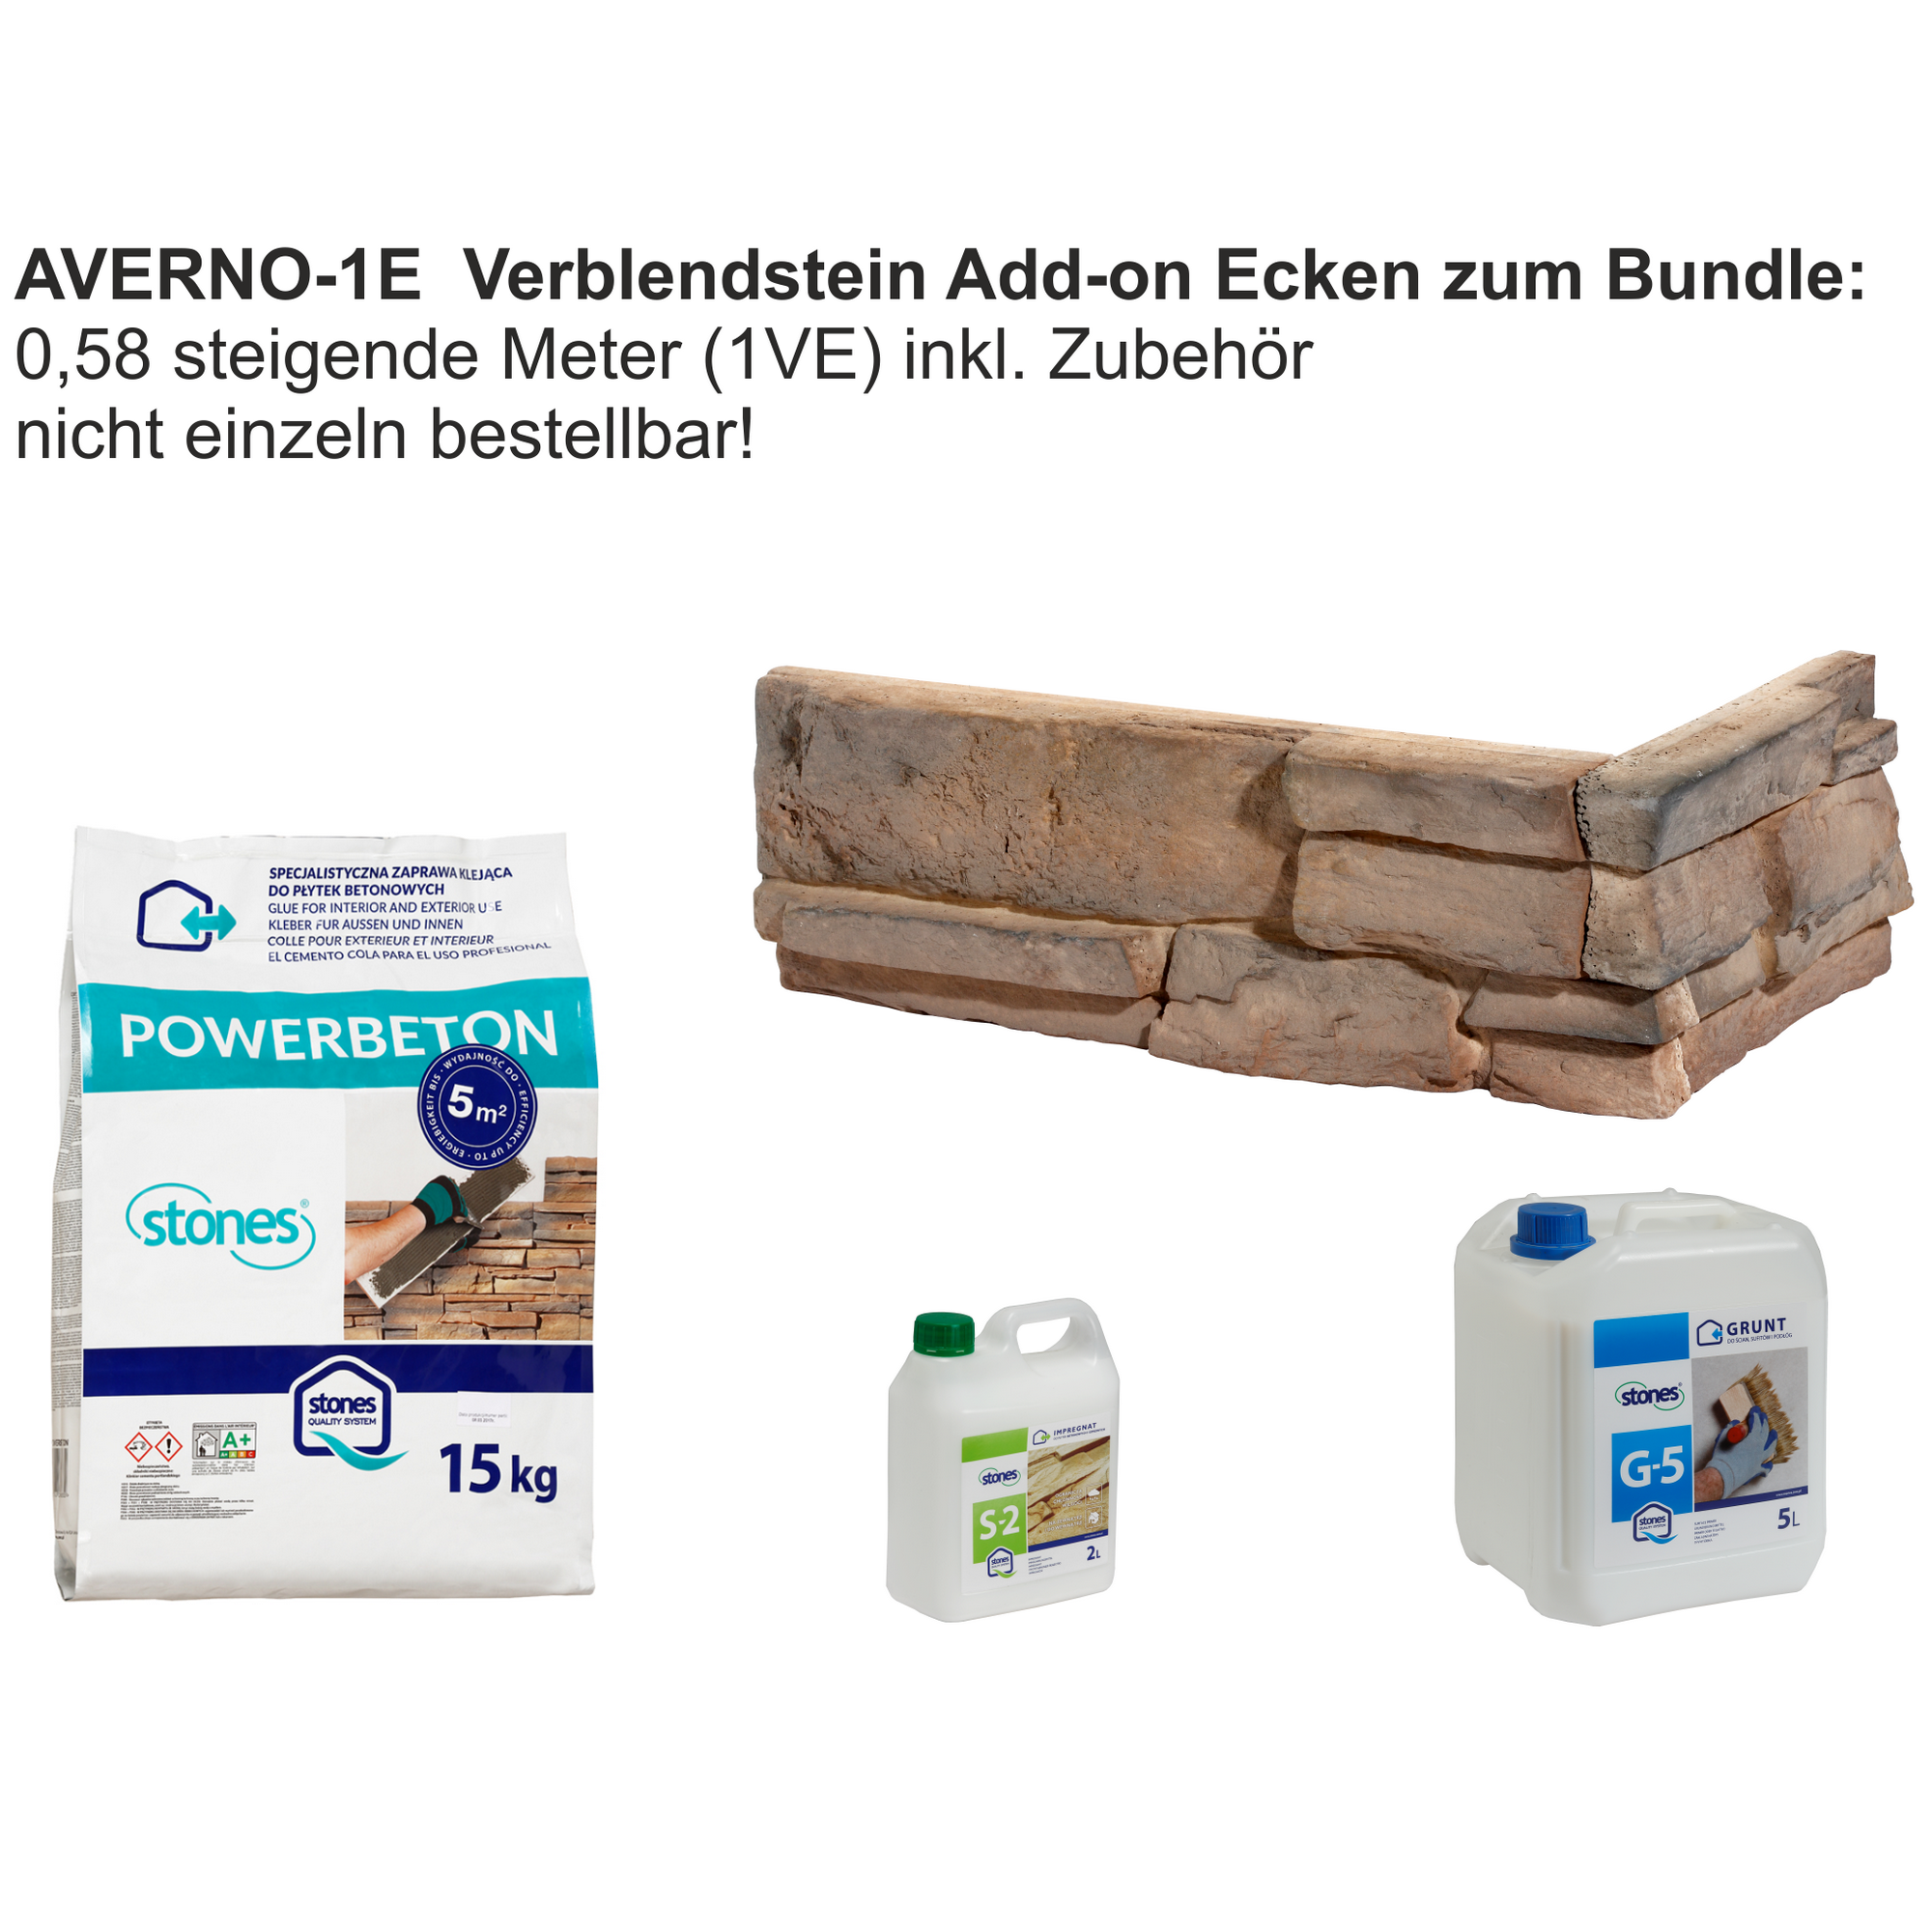 Verblender-Ecken 'Averno-1E' zum Bundle + product picture